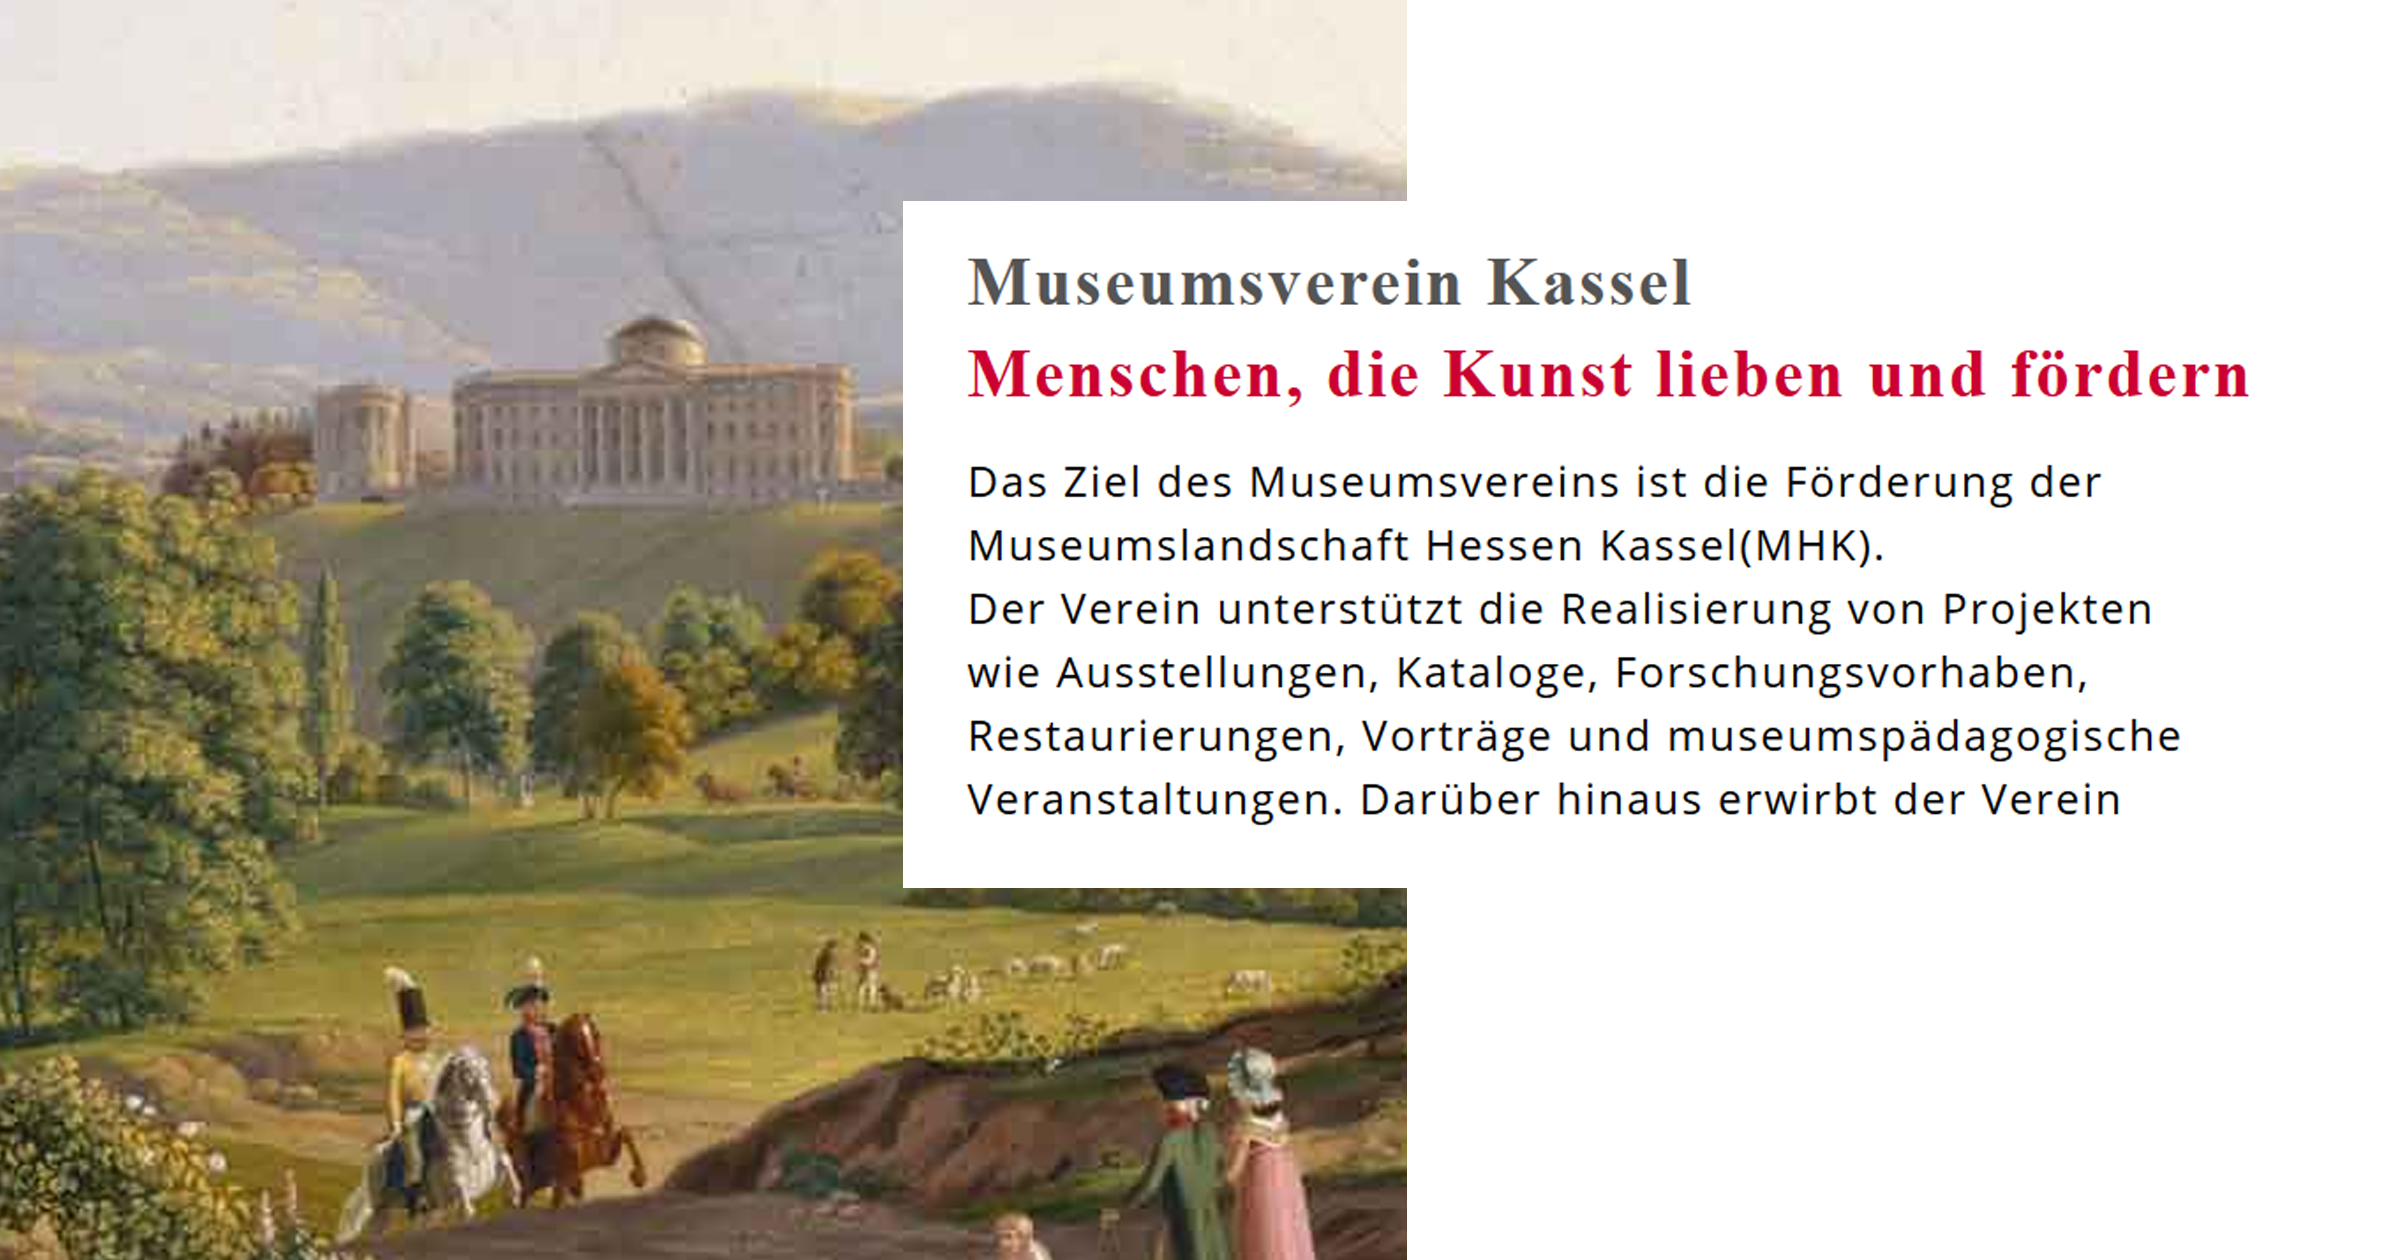 (c) Museumsverein-kassel.de